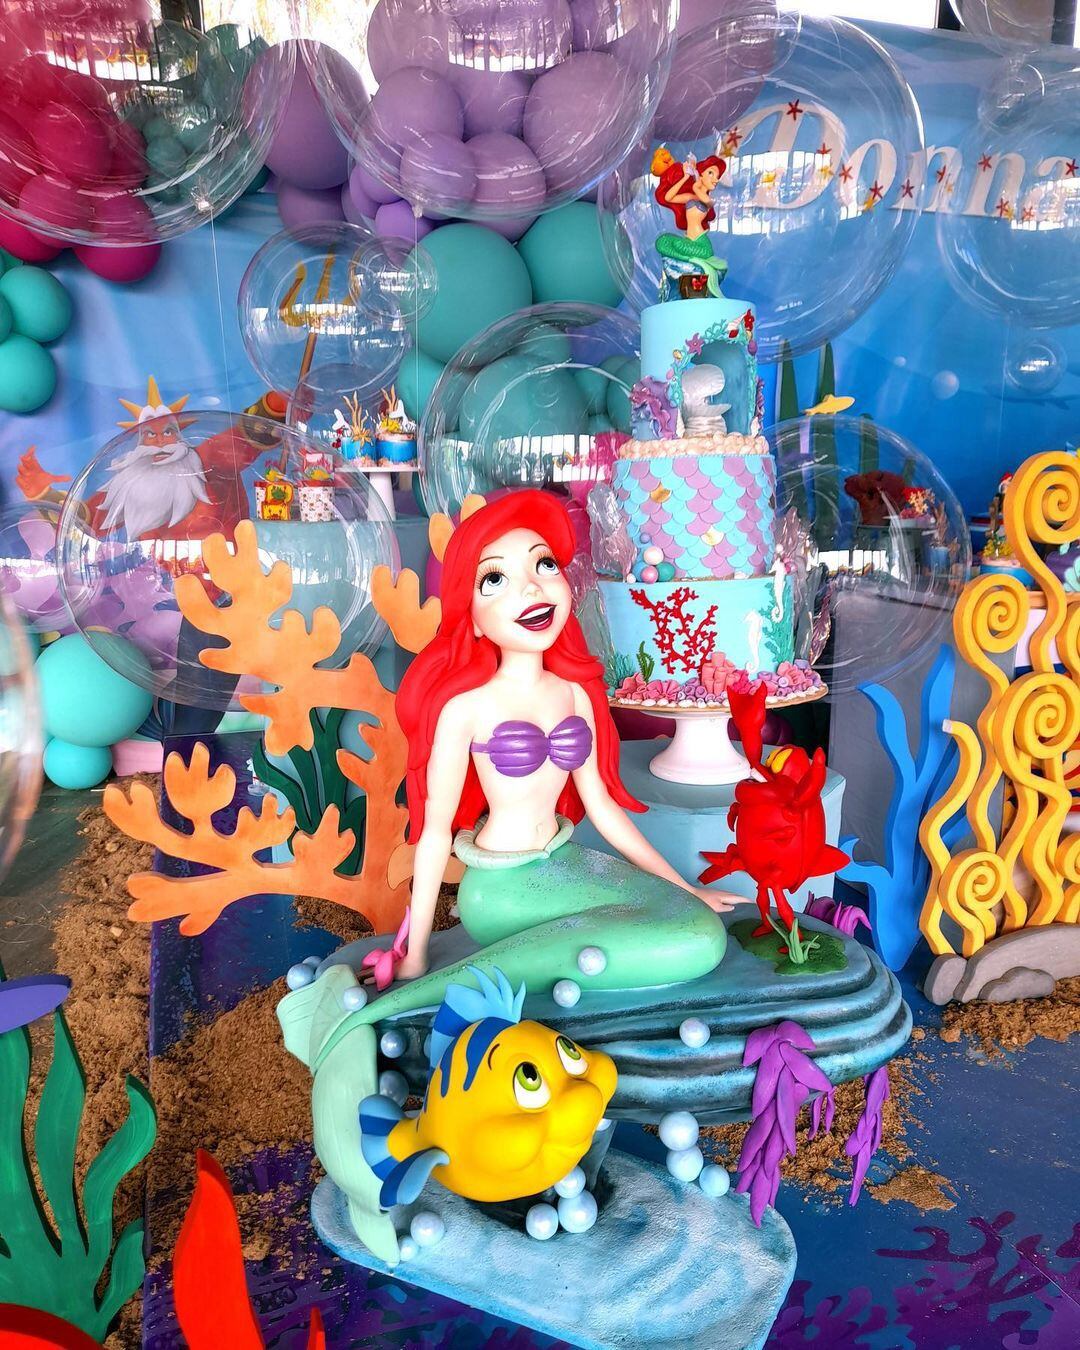 Esculturas y modelados en el candy bar: corales, personajes principales y muchos detalles del mundo bajo el mar